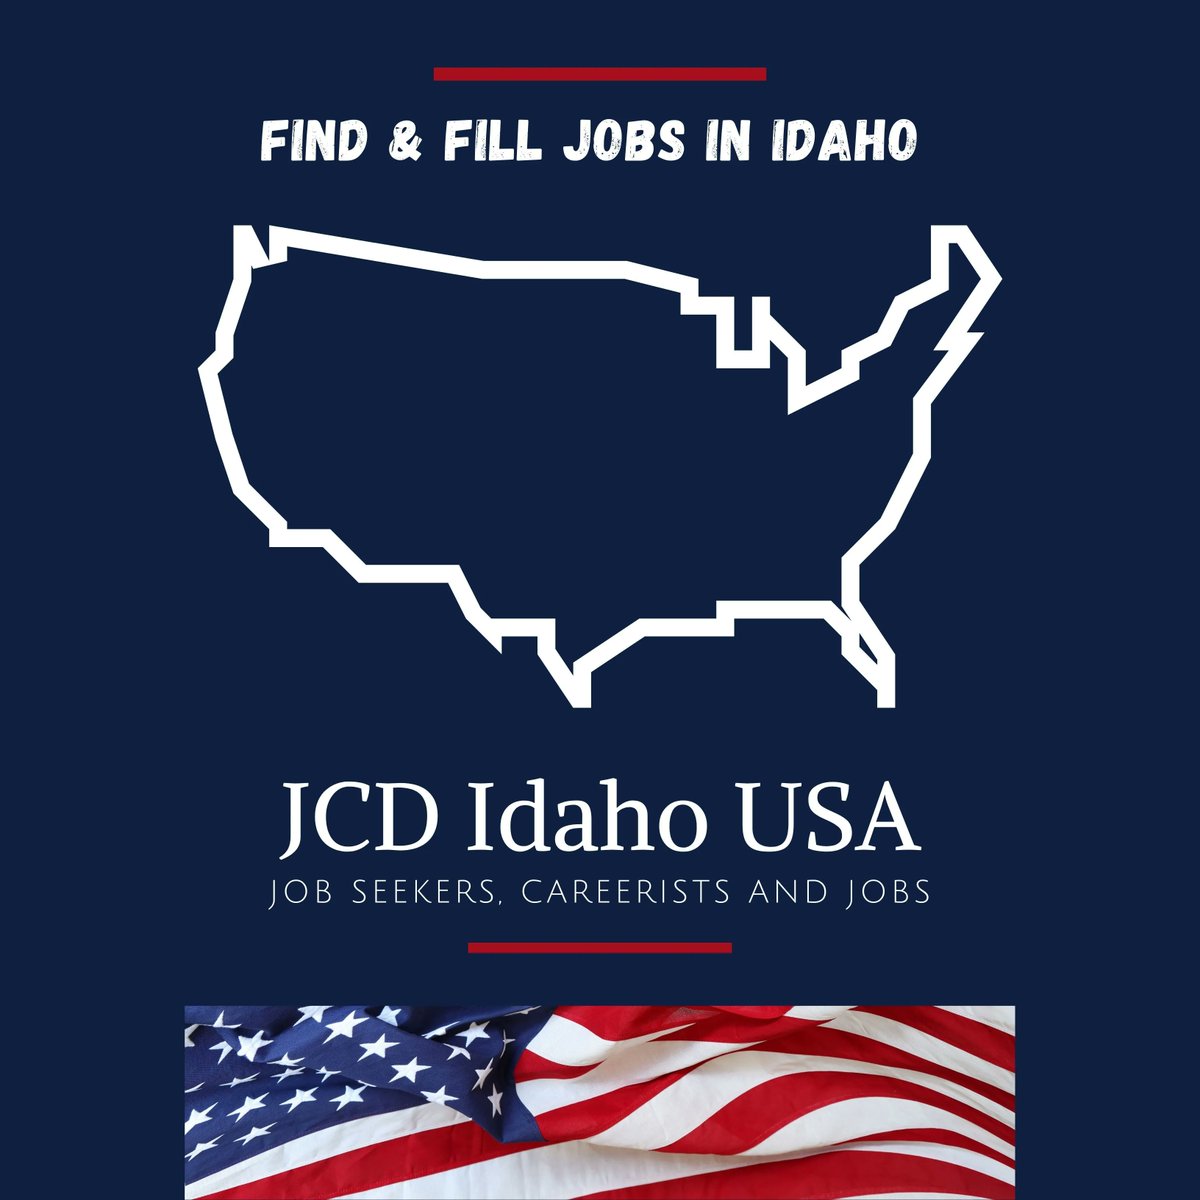 Looking for #jobs or #hiring #Talent in #Idaho? GO HERE buff.ly/3BaBZyo 

#idahojobs #kootenaicounty #blackfootid #eagleidaho #meridianidaho #moscowid #mccallid #salmonid #twinfalls #ammonidaho #burleyid #fruitlandid #grangeville #usa #usajobs #usjobs #LinkedIn